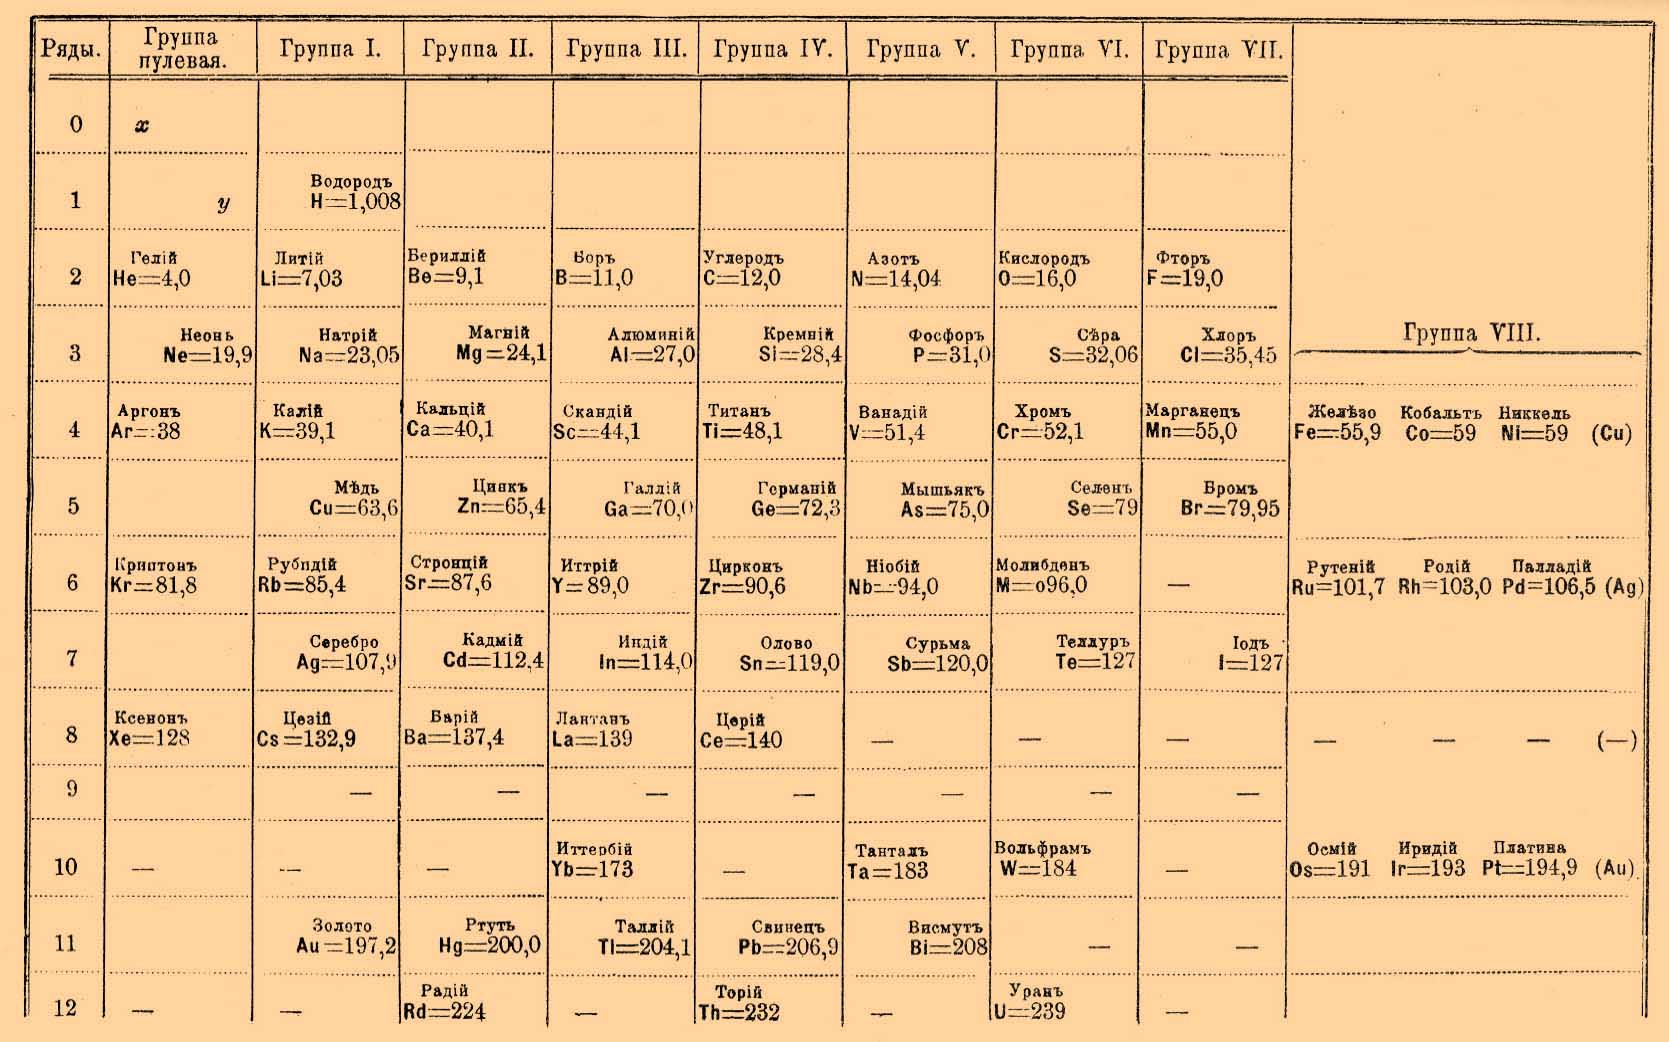 0 группа элементов. Первая периодическая таблица Менделеева с эфиром. Периодическая система Менделеева 1869. Нулевая группа периодической таблицы Менделеева. Таблица Менделеева 1906 года с эфиром.